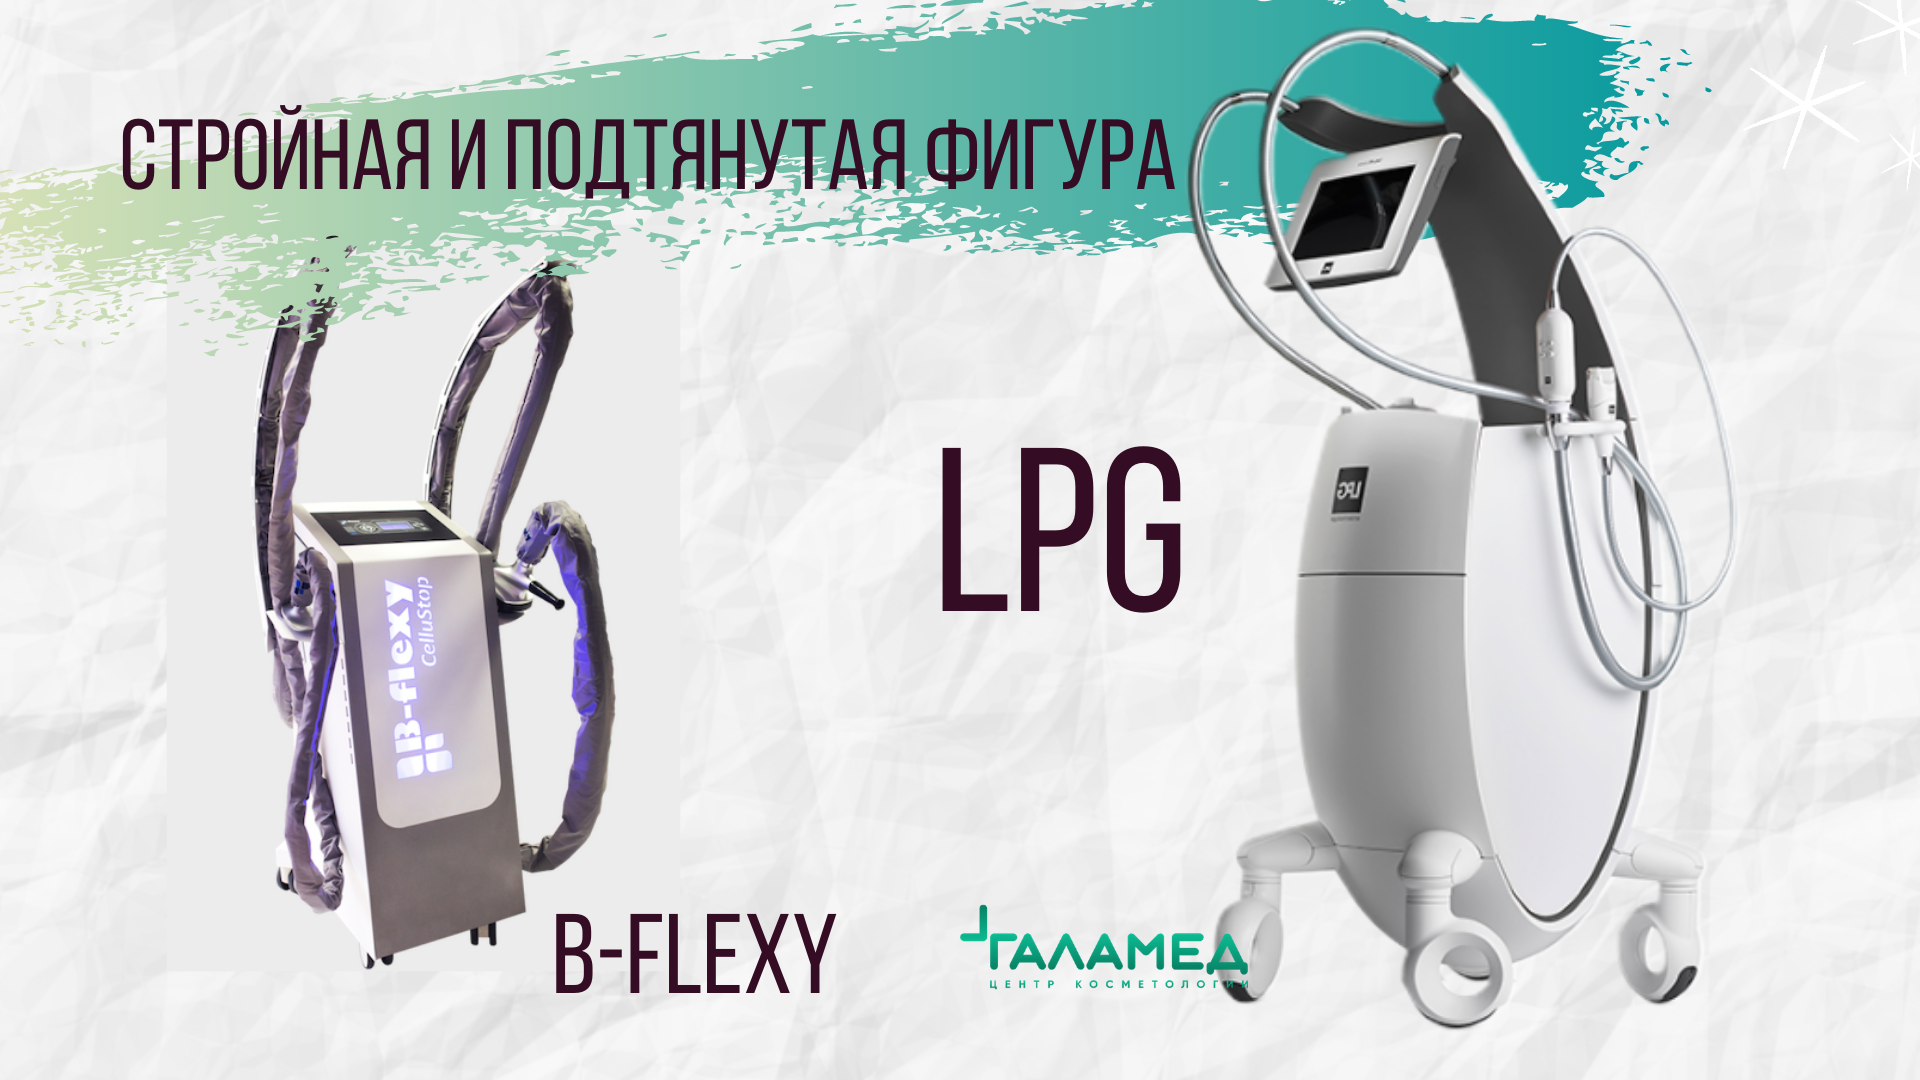 Чем отличаются аппараты LPG и B-Flexy